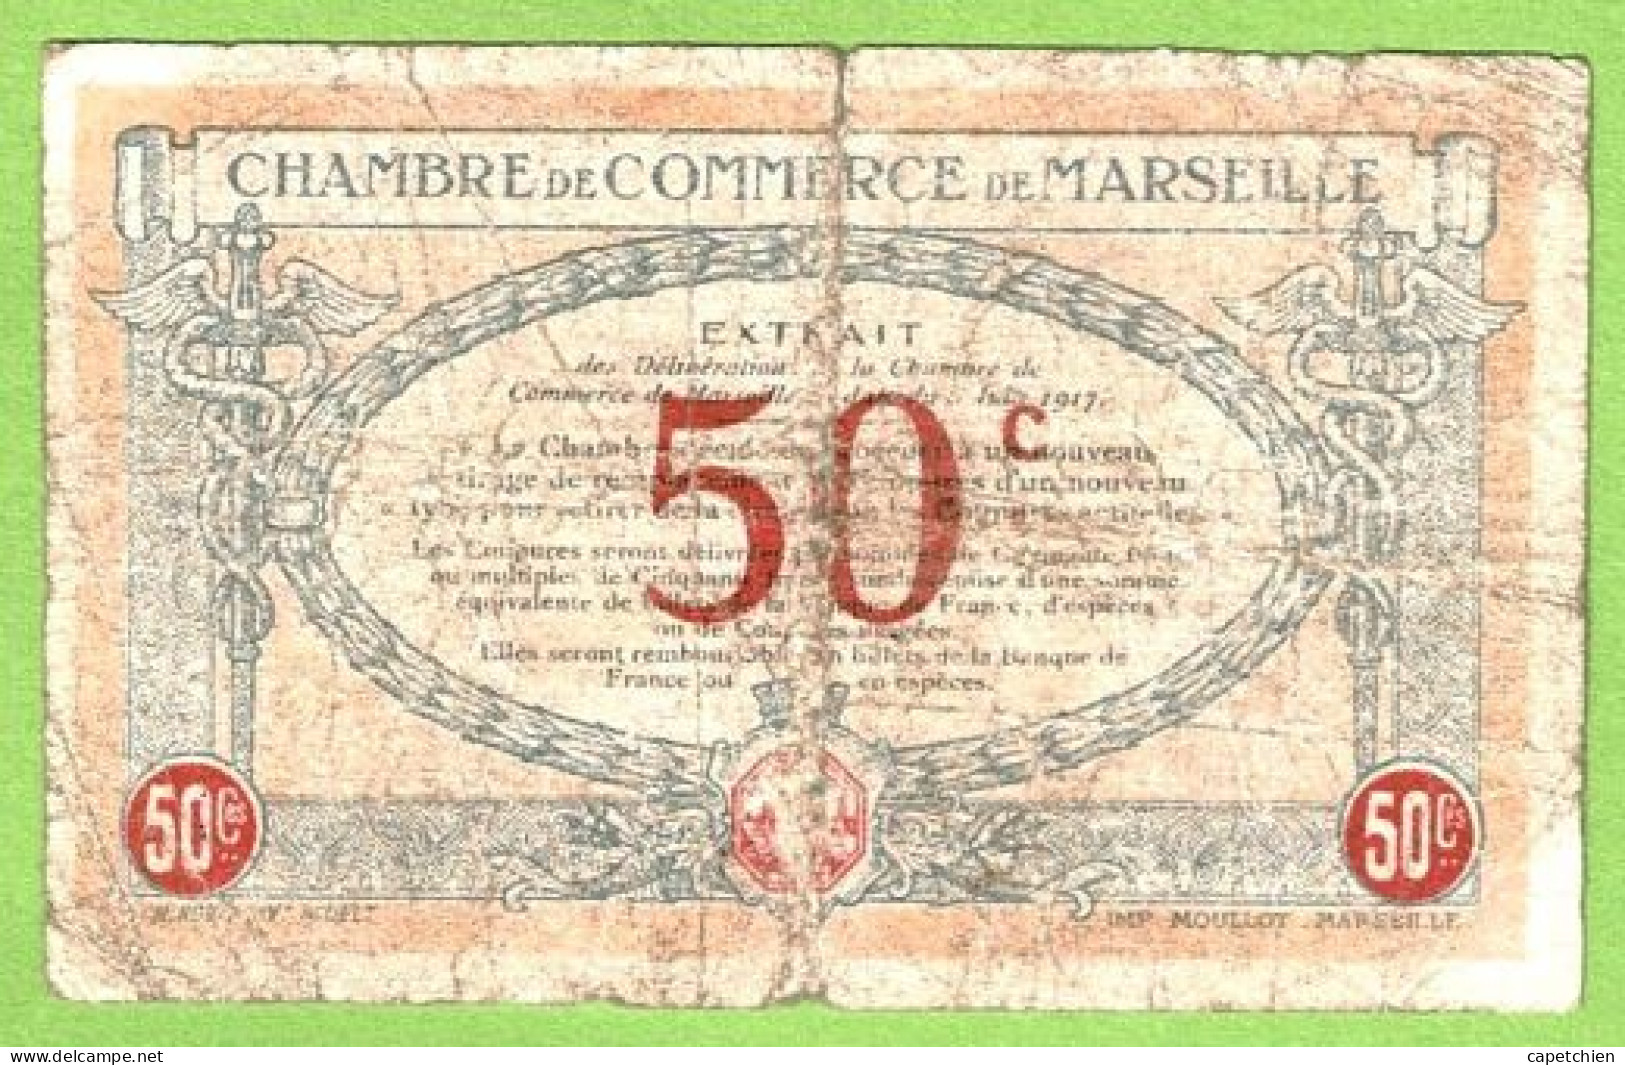 FRANCE / CHAMBRE De COMMERCE / MARSEILLE / 50 CENTIMES / 1917 / N° 57178 / SERIE C - R - Cámara De Comercio